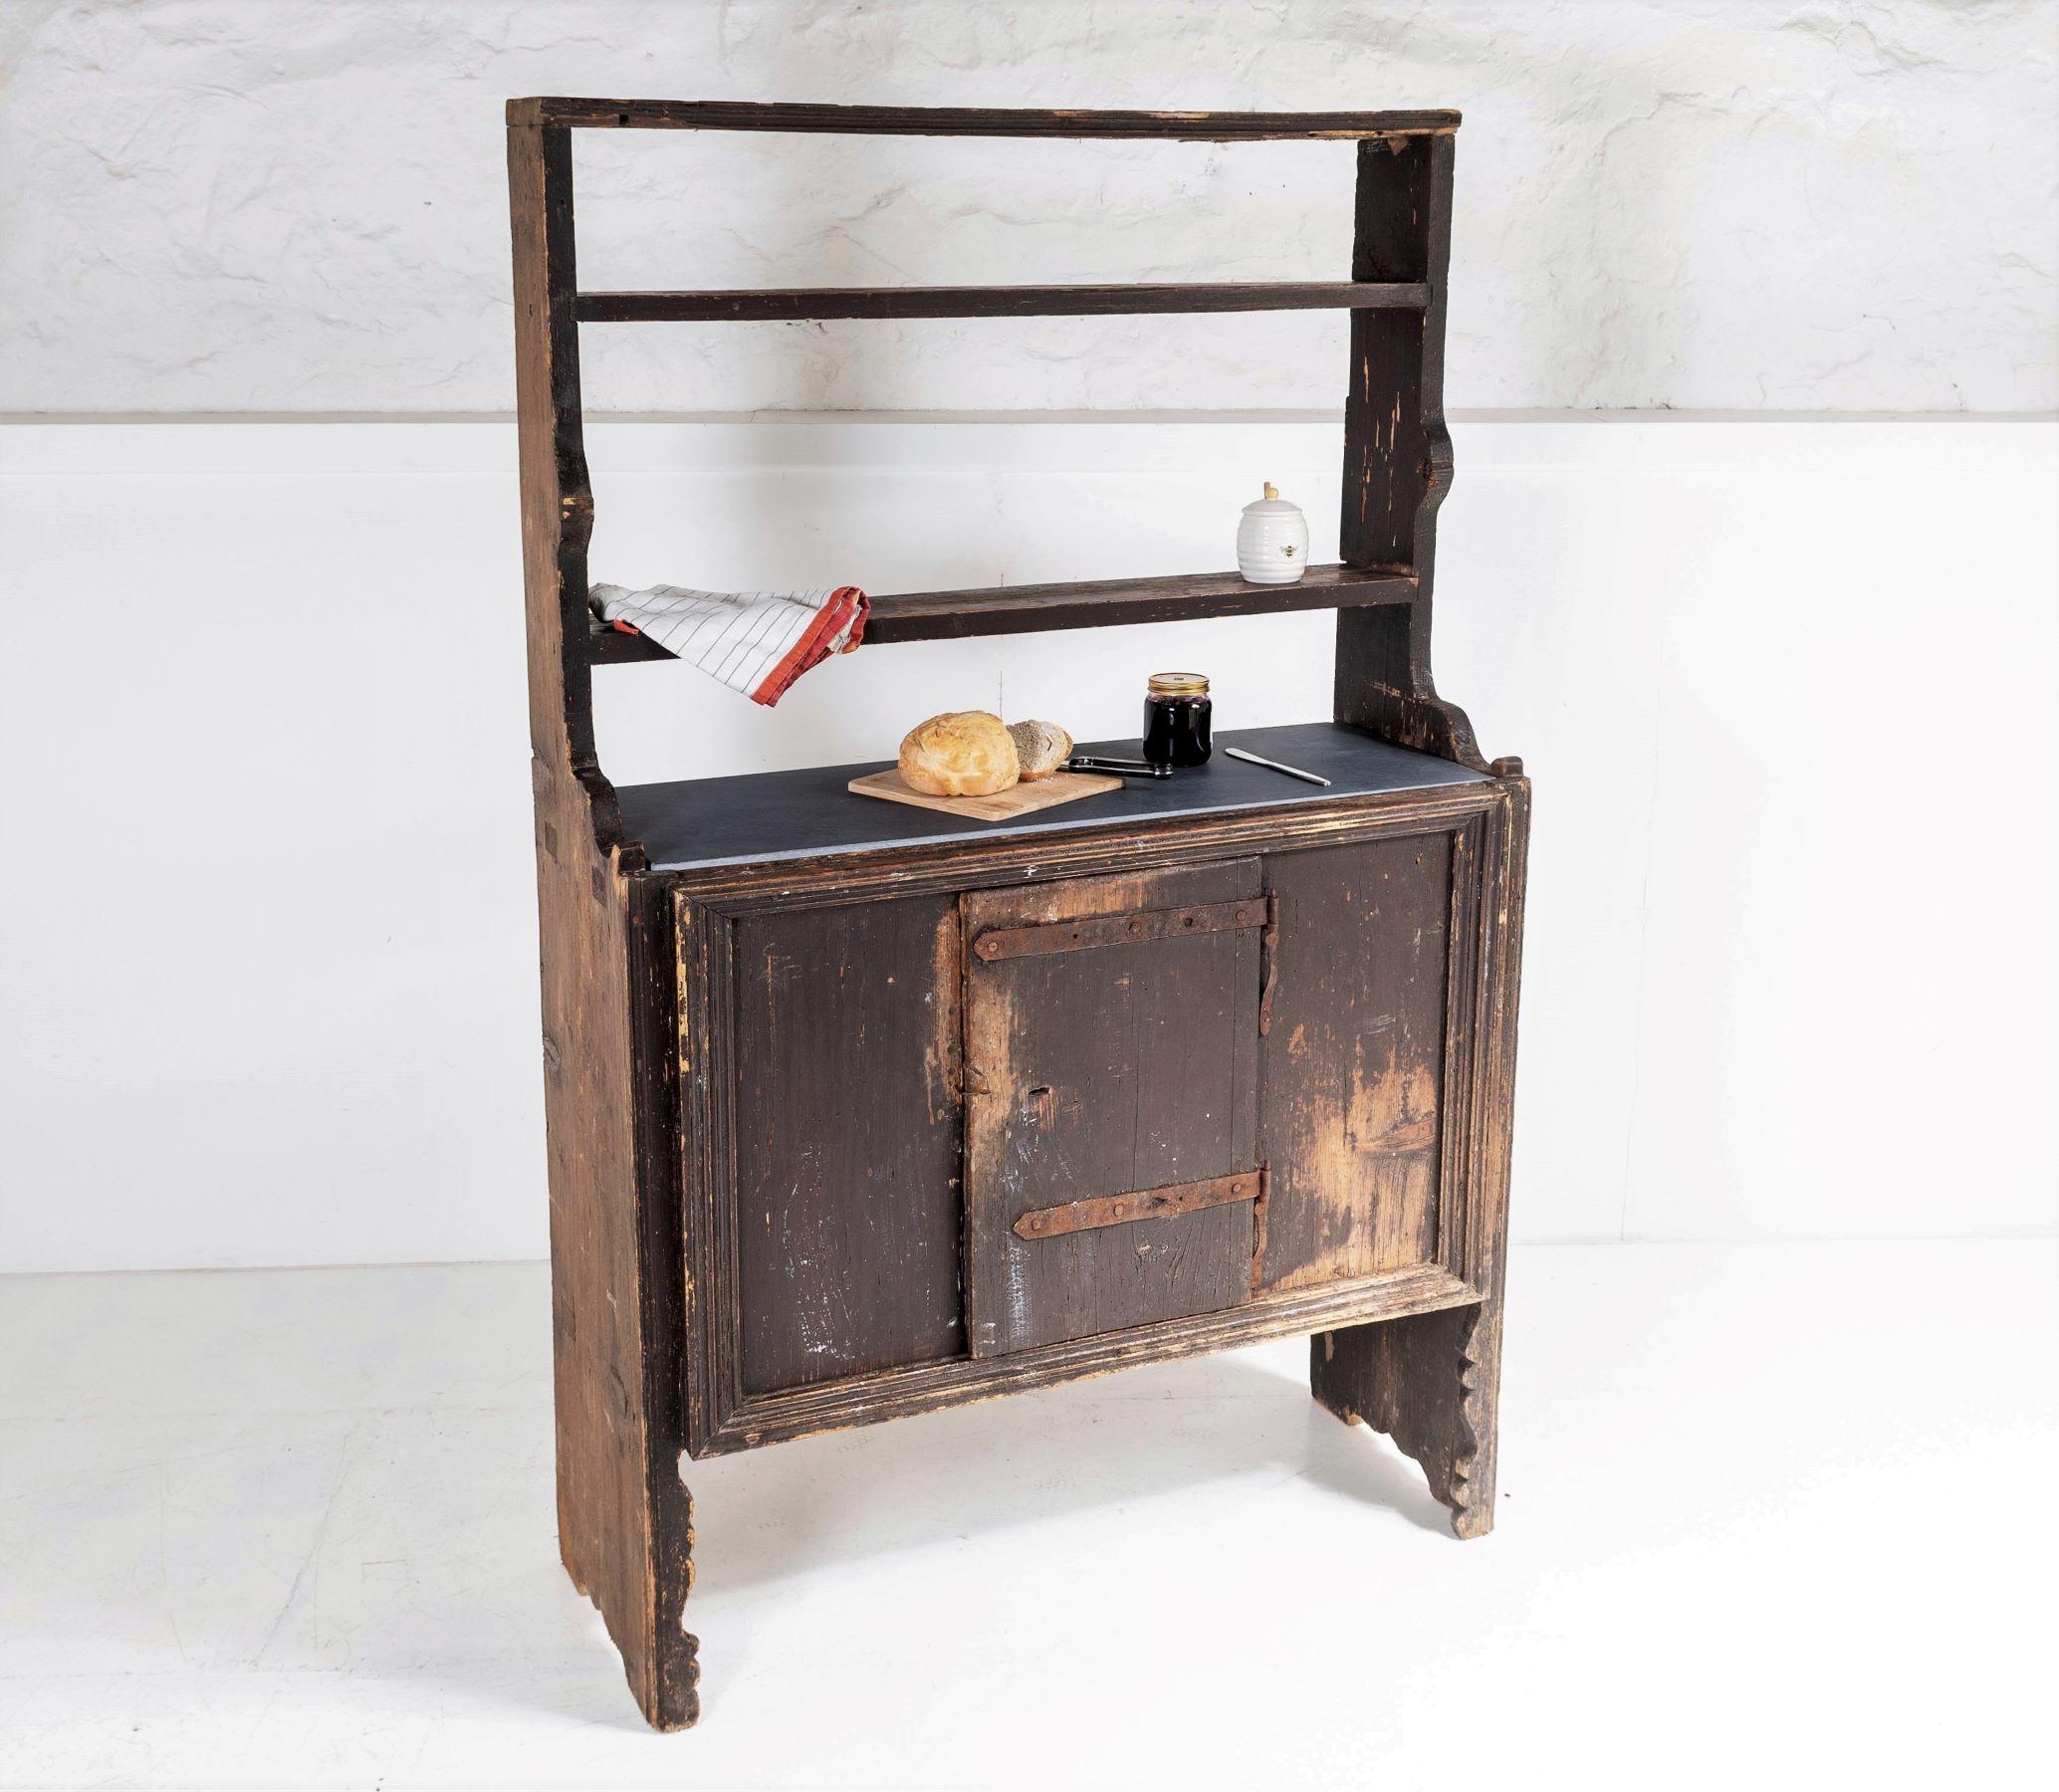 19th Century Primitive Rustic European Farmhouse Kitchen Dresser Unit with Storage Shelves For Sale